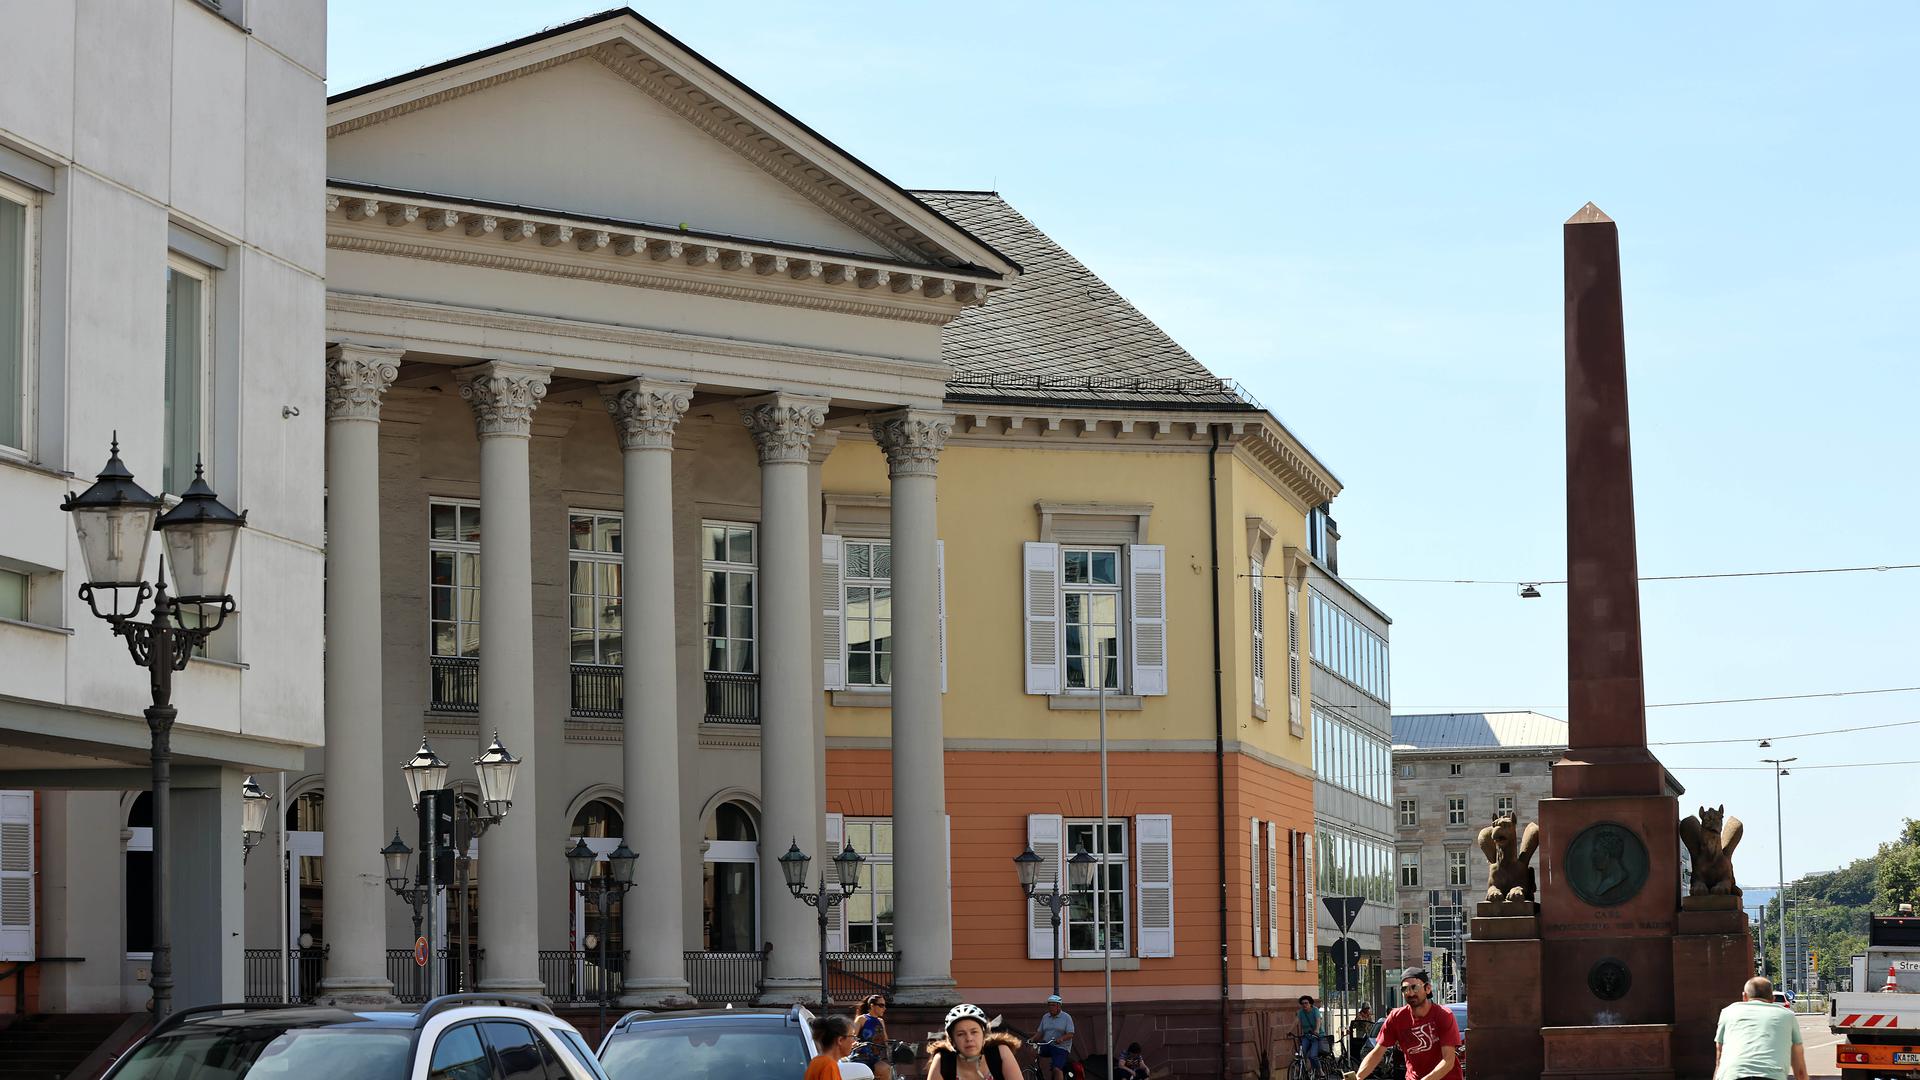 Stadtbildprägend: Das Markgräfliche Palais ist eines der bedeutendsten Bauwerk von Friedrich Weinbrenner.